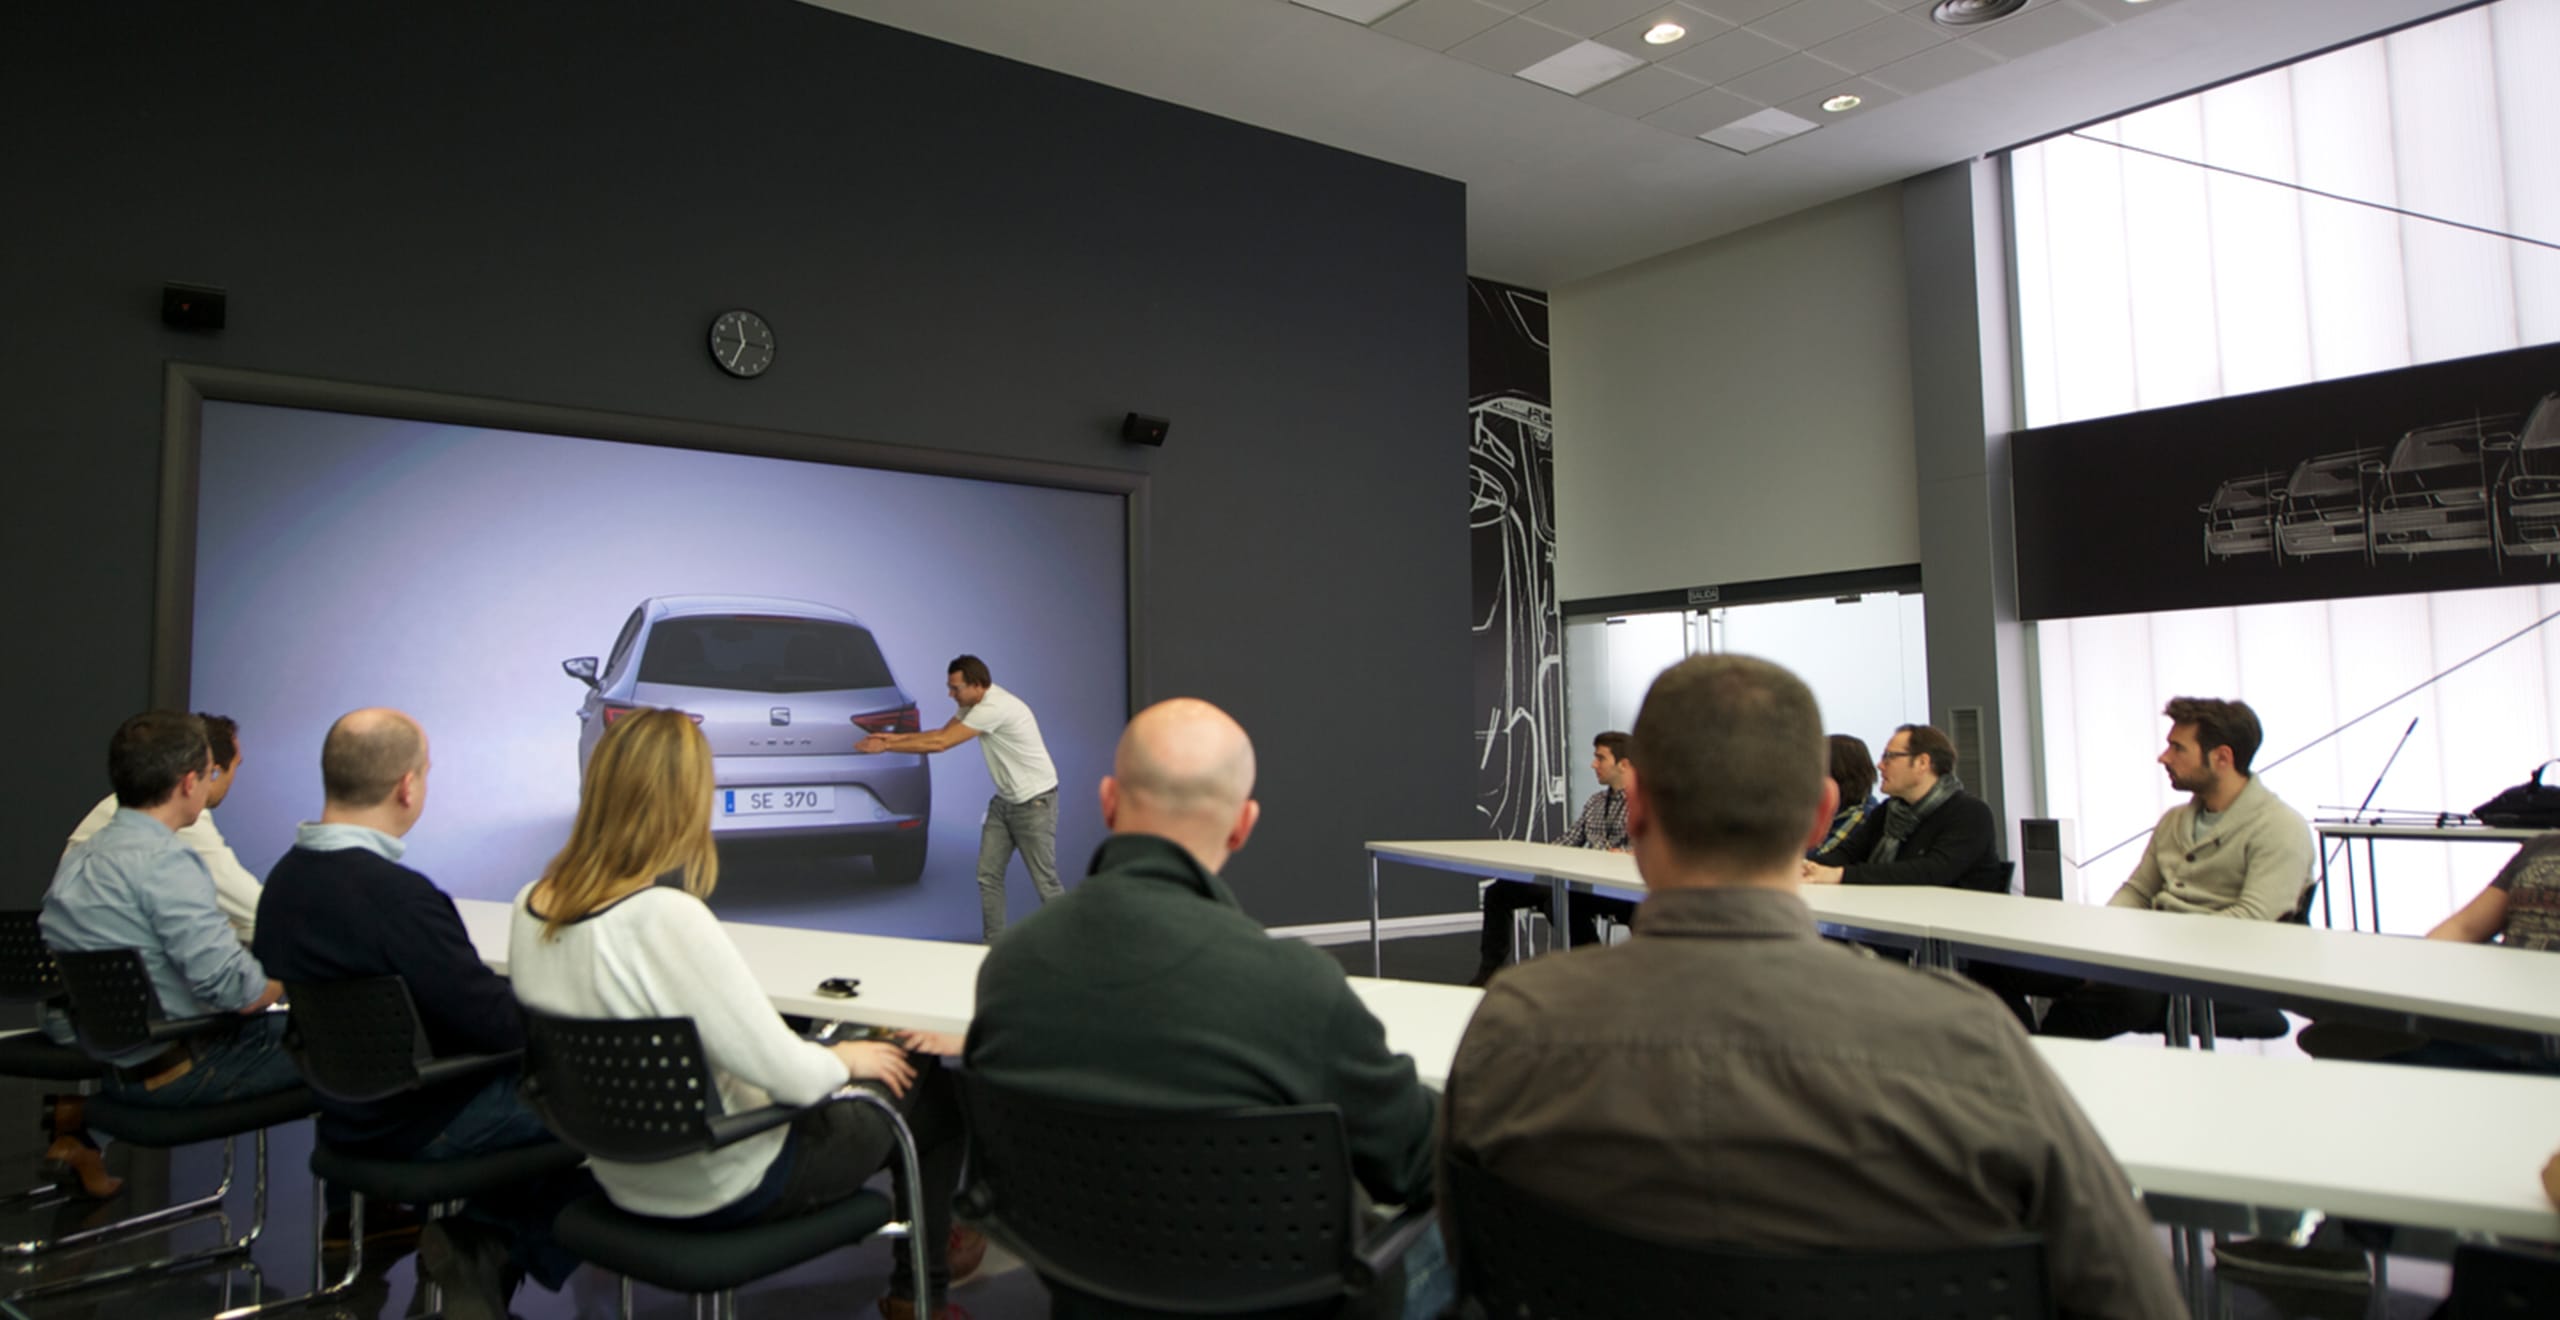 En man gestikulerar mot en SEAT Leon-bildesign vy bakifrån med människor som sitter vid ett bord och tittar på – SEAT Human Resources